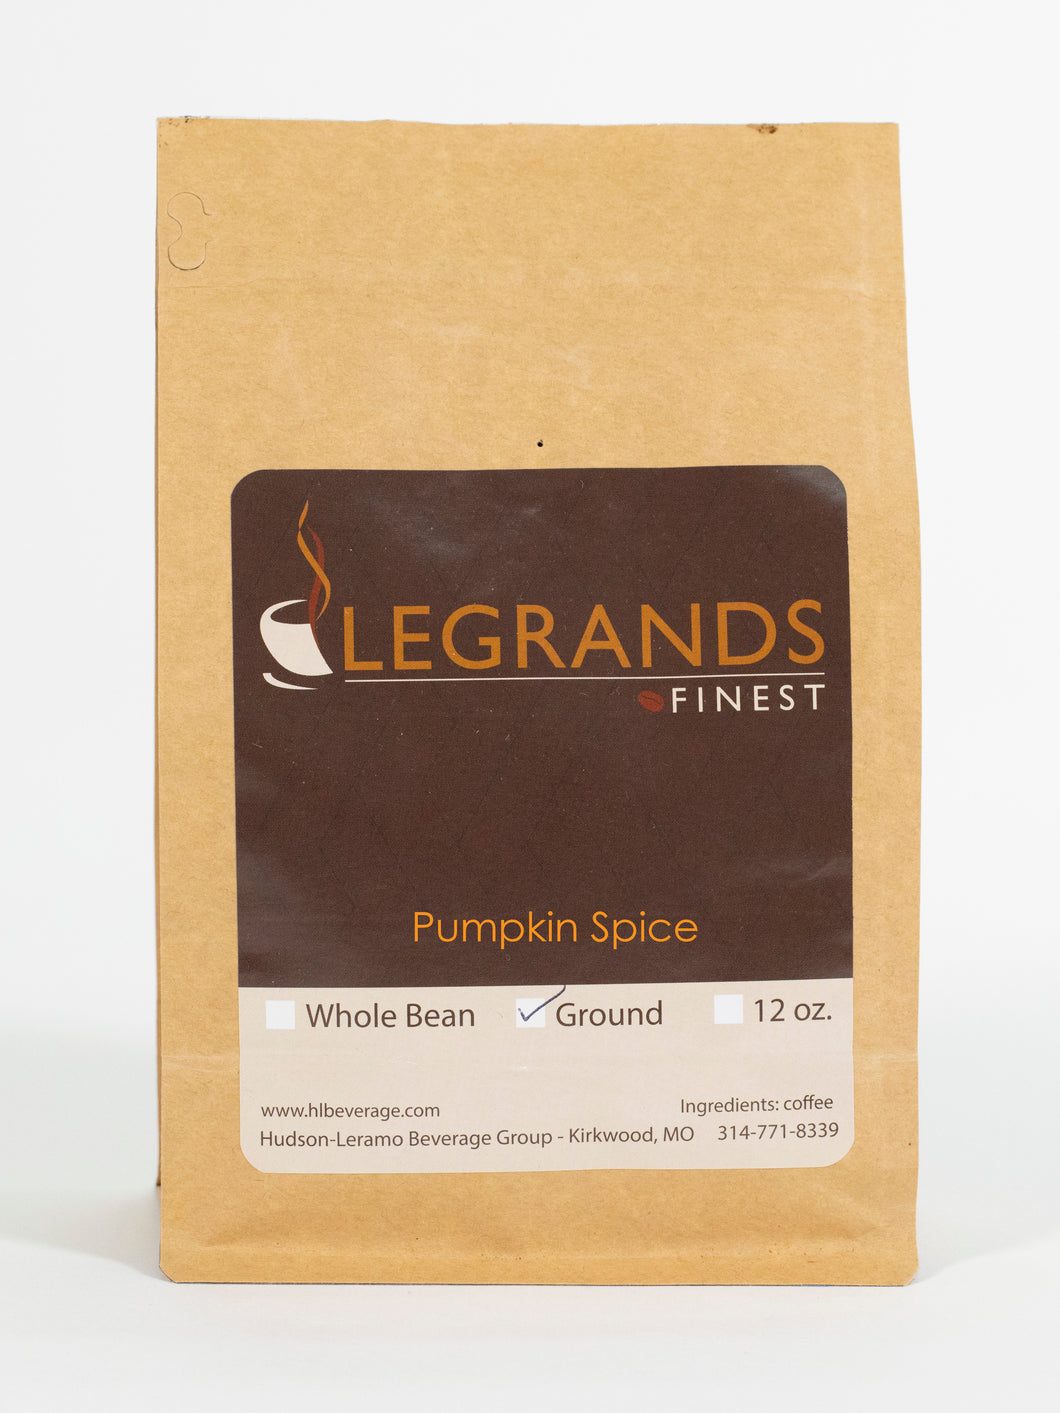 LeGrands Finest Pumpkin Spice Ground Coffee